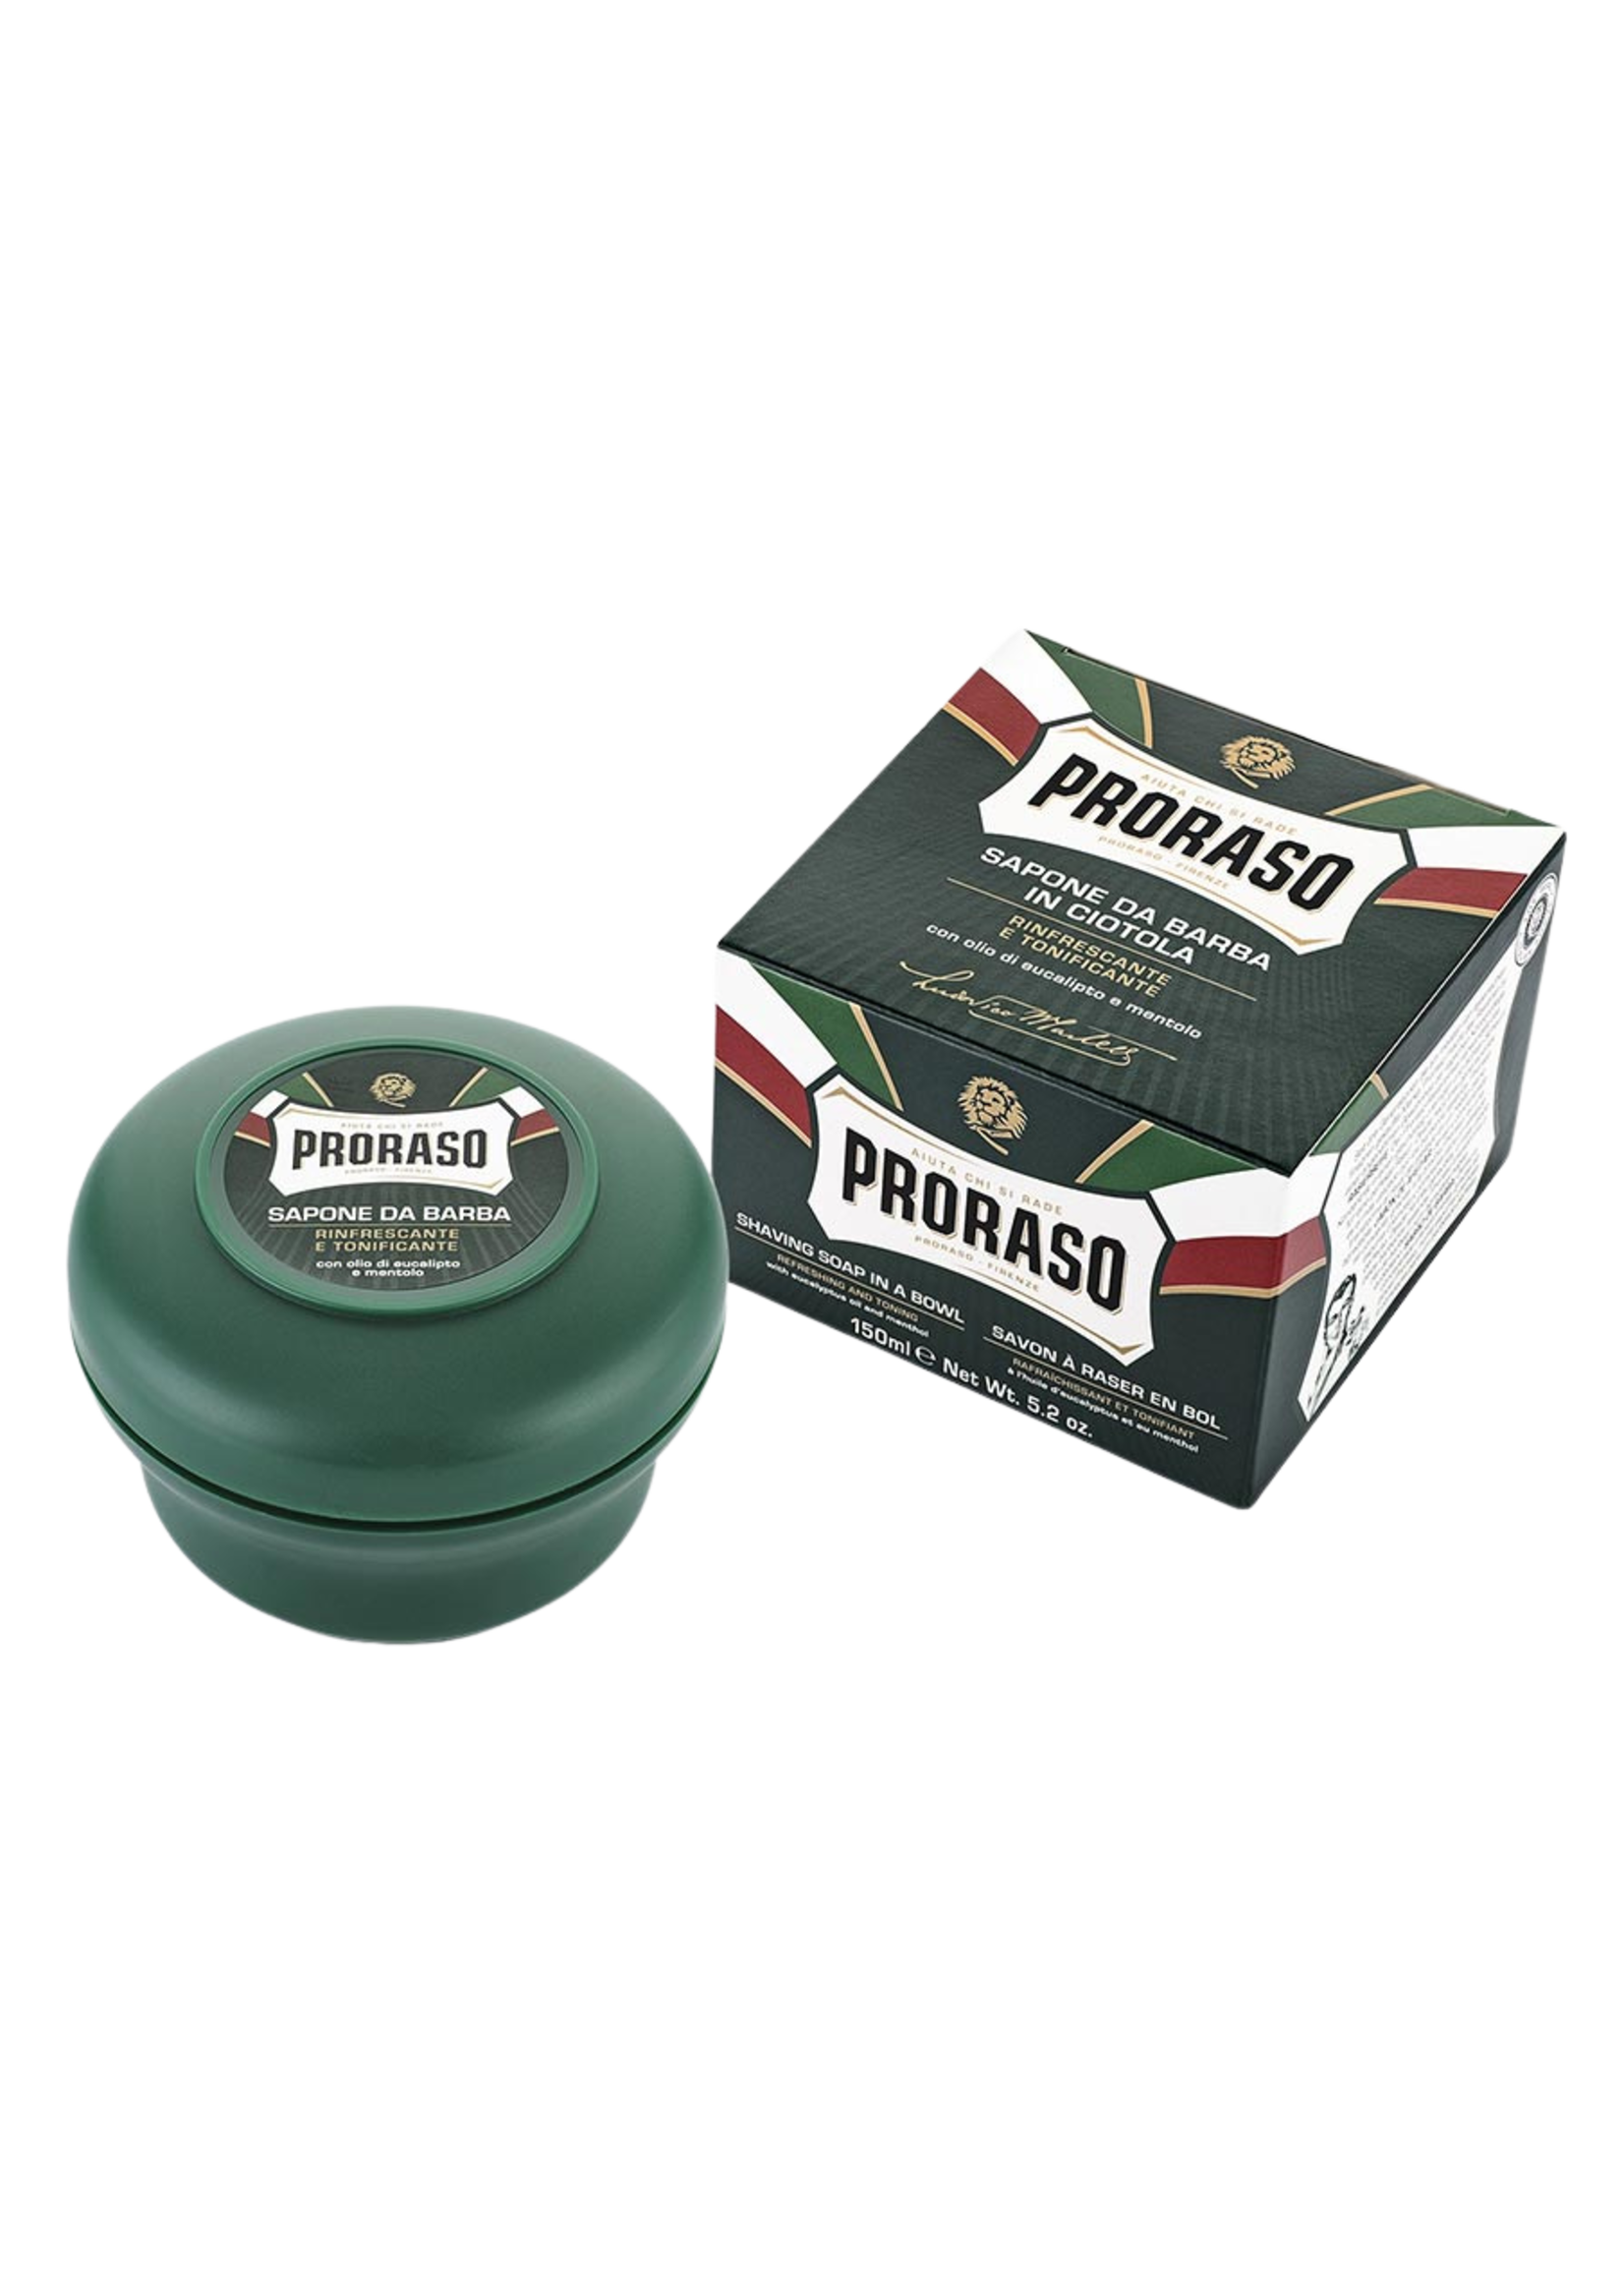 Proraso Proraso Shave Soap Jar Refresh 150ml